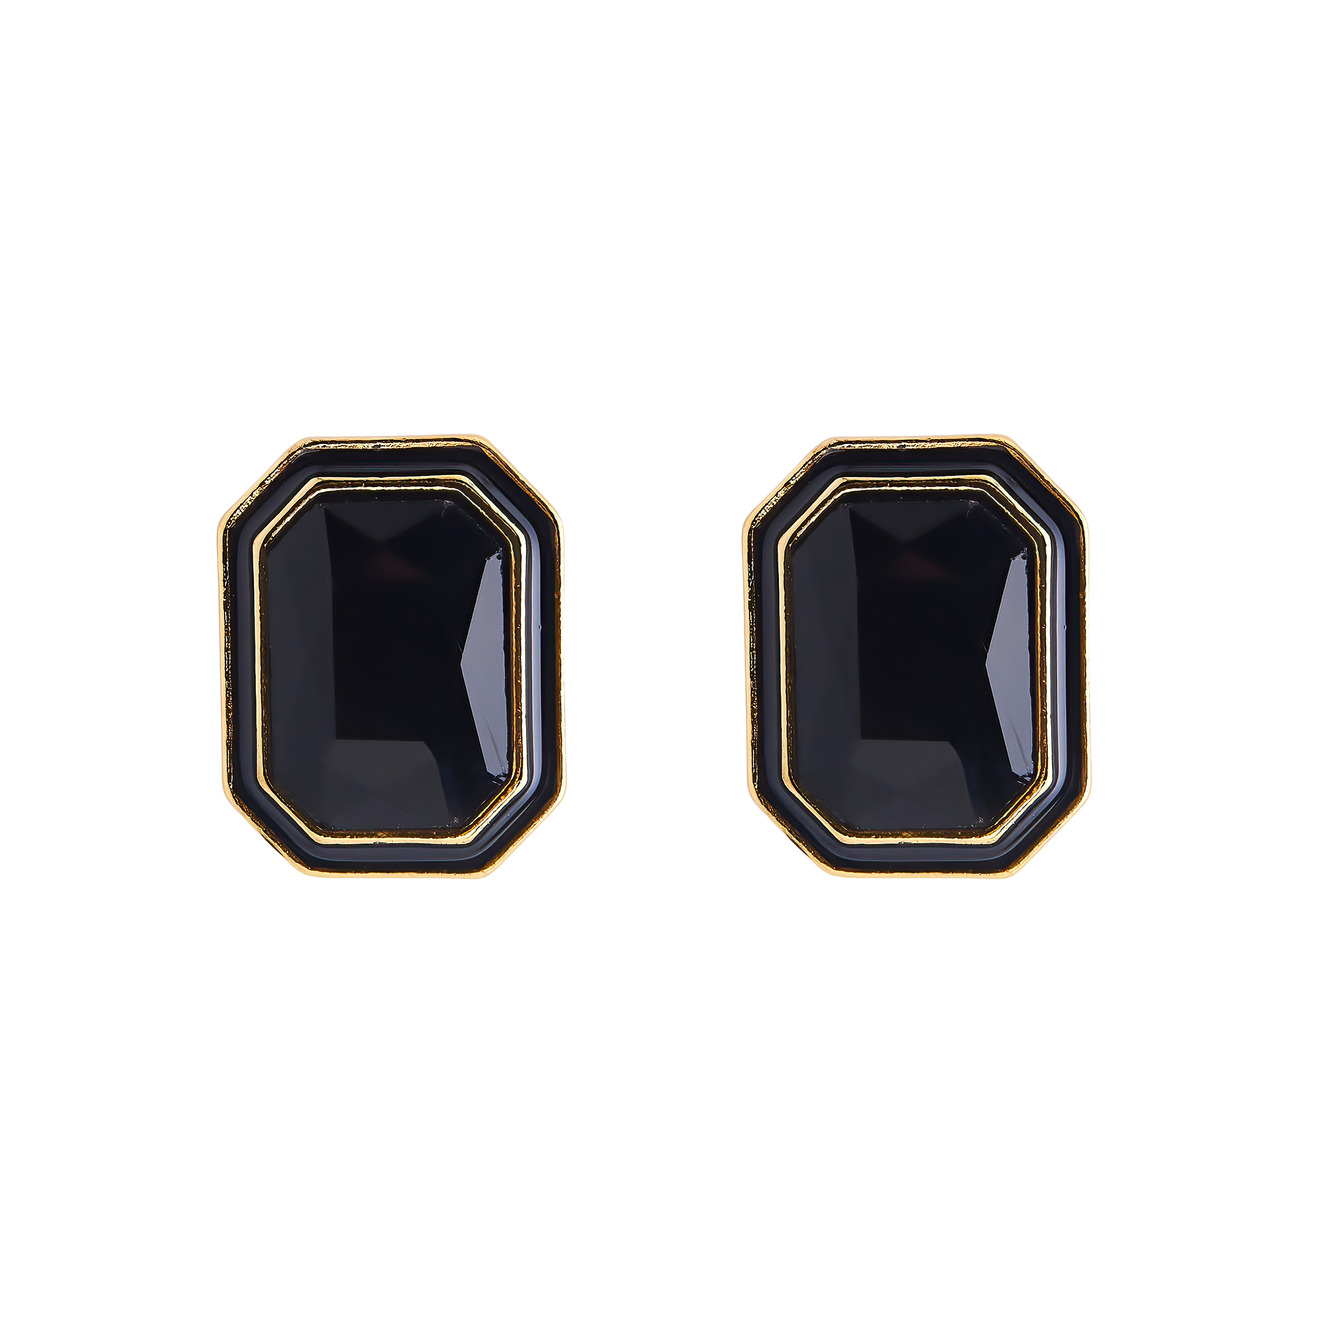 Herald Percy Крупные золотистые серьги с черными кристаллами и черной эмалью herald percy золотистые серьги эмалью с подвеской огранки багет